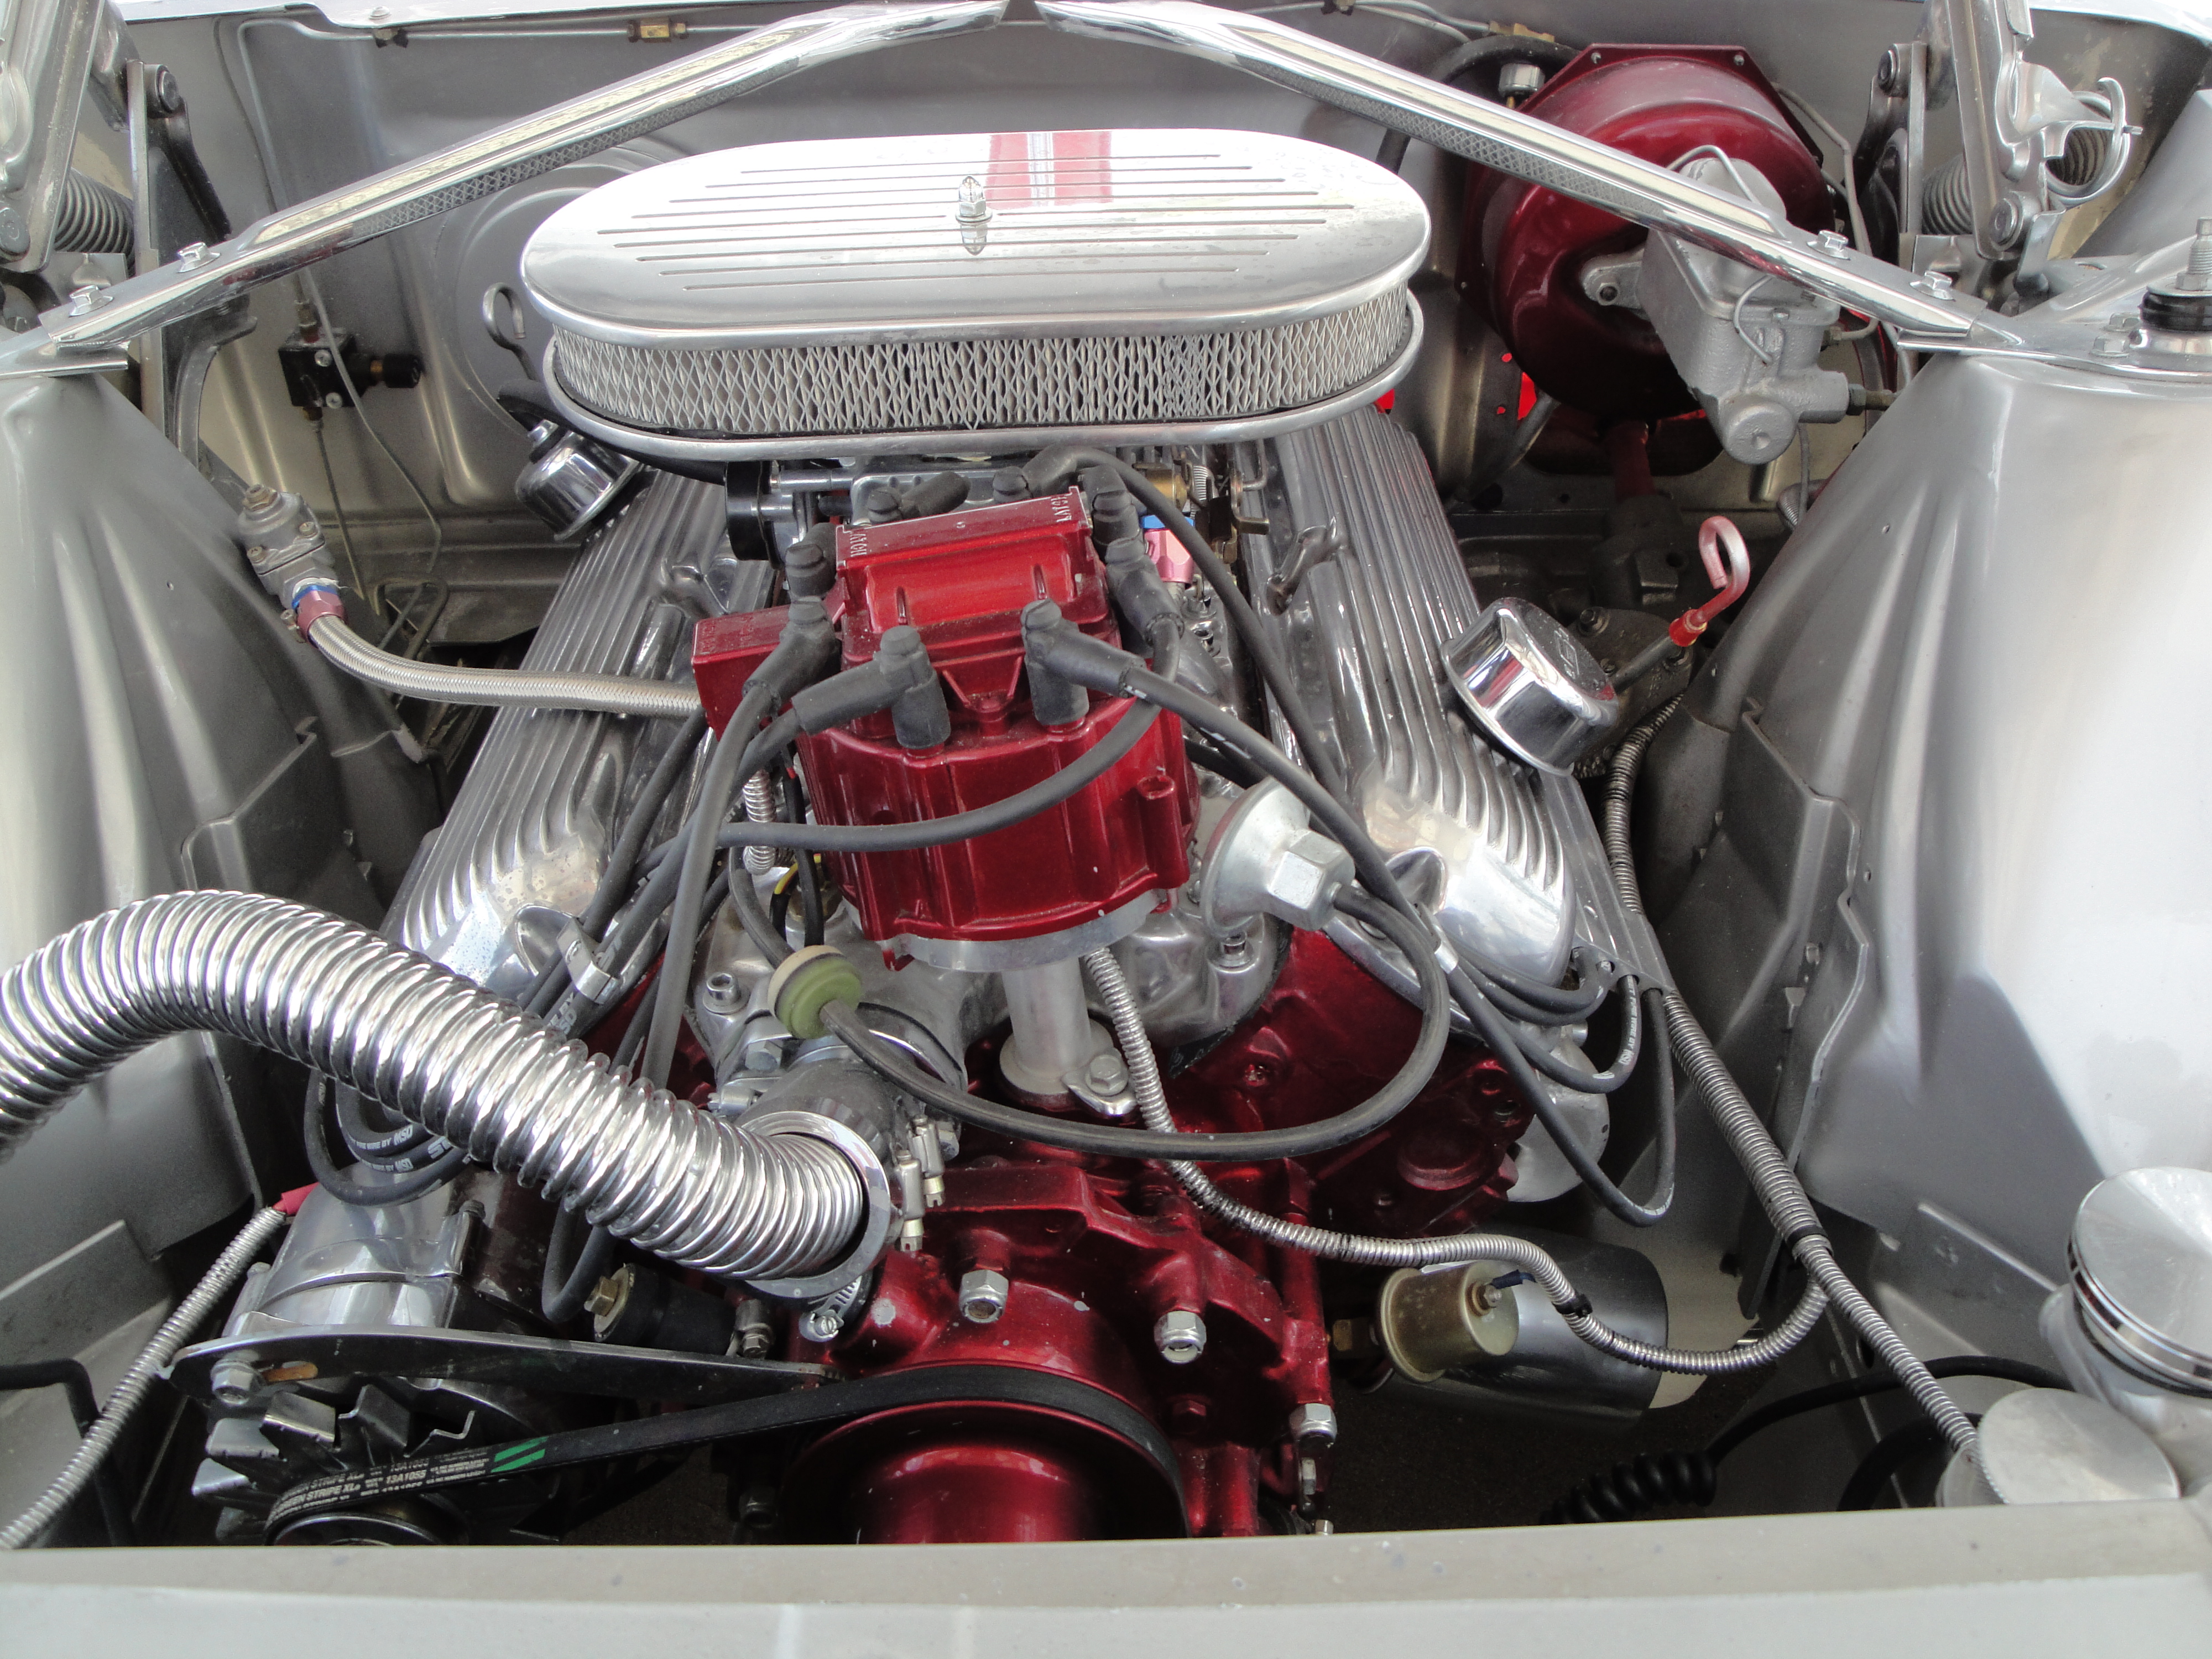 Thunderflite engine close up